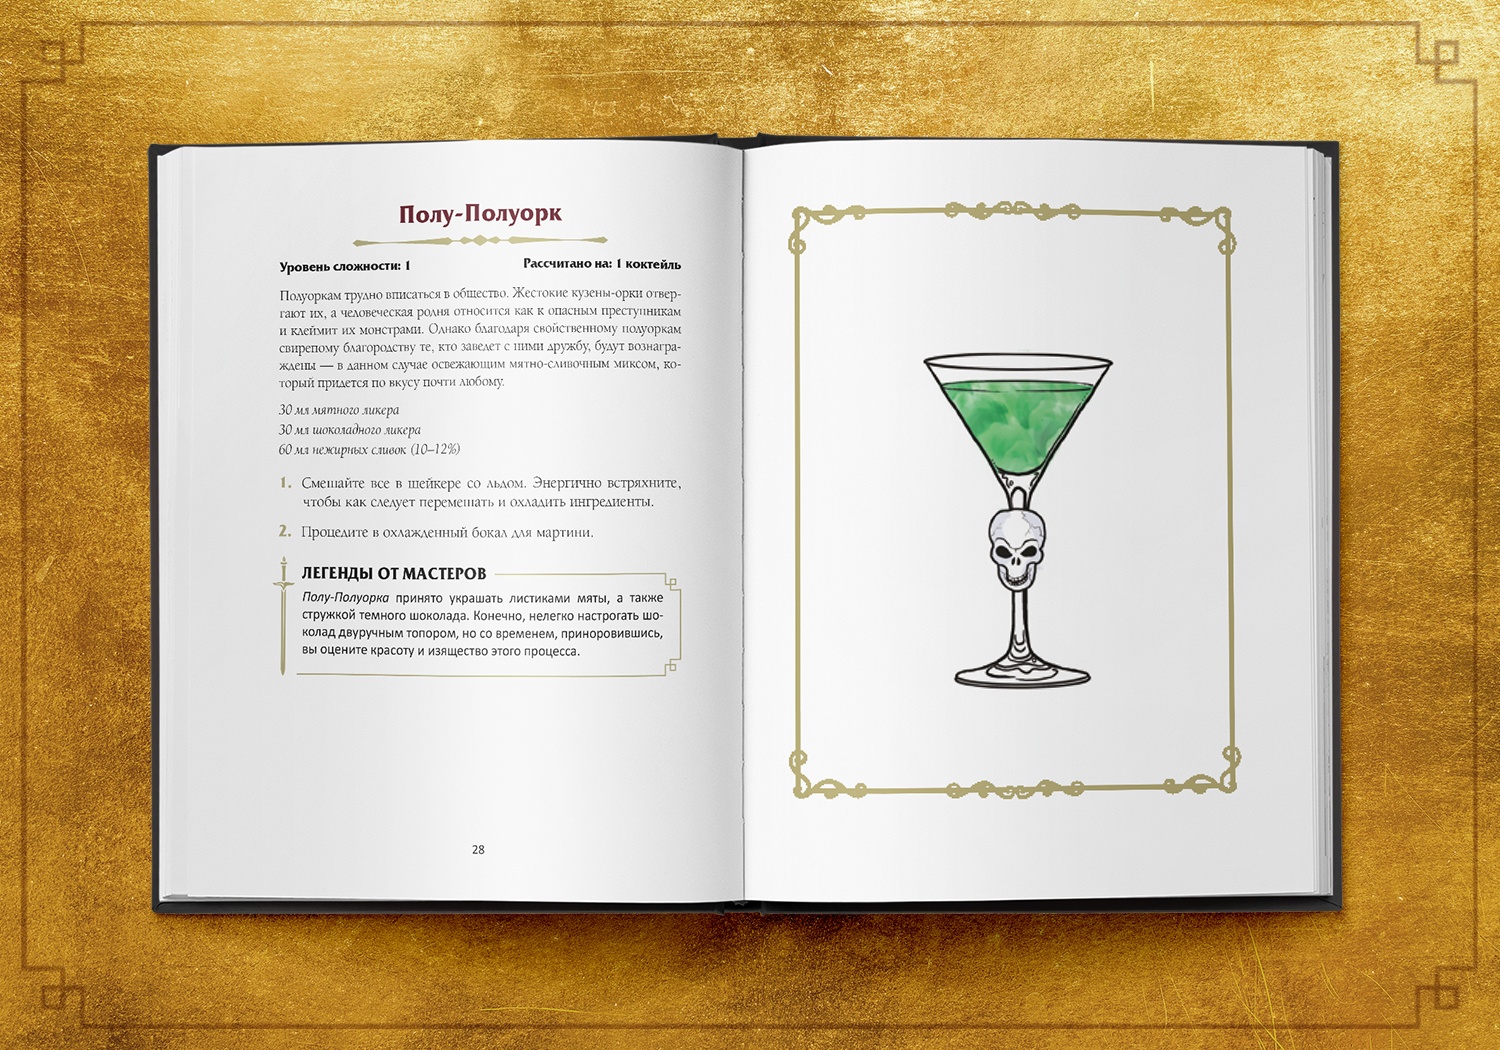 Стартовал предзаказ «Напитков Подземелья» — книги с рецептами фэнтези-коктейлей (18+) 2